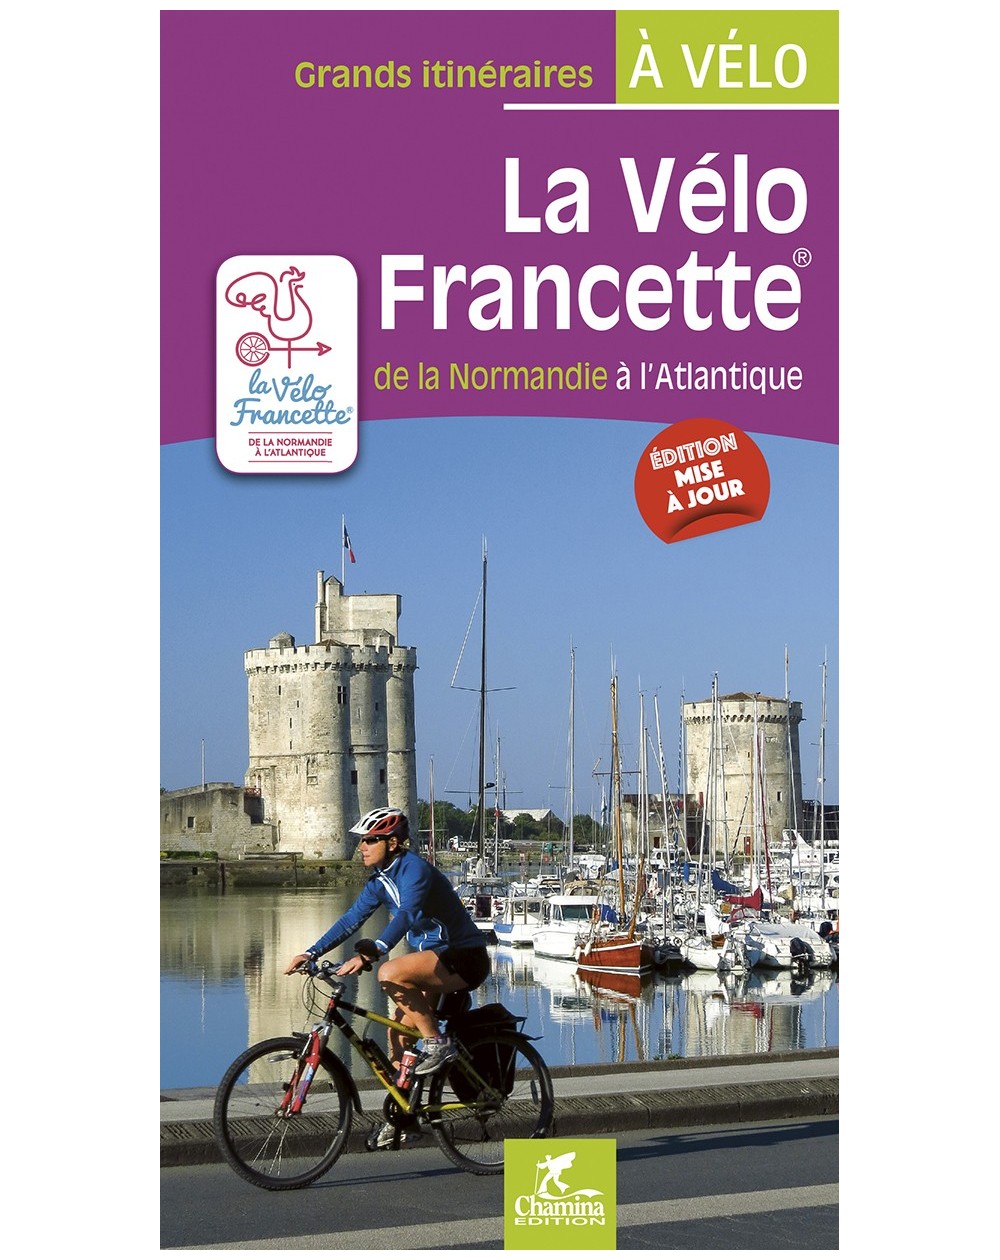 La Velo Francette Chamina Edition